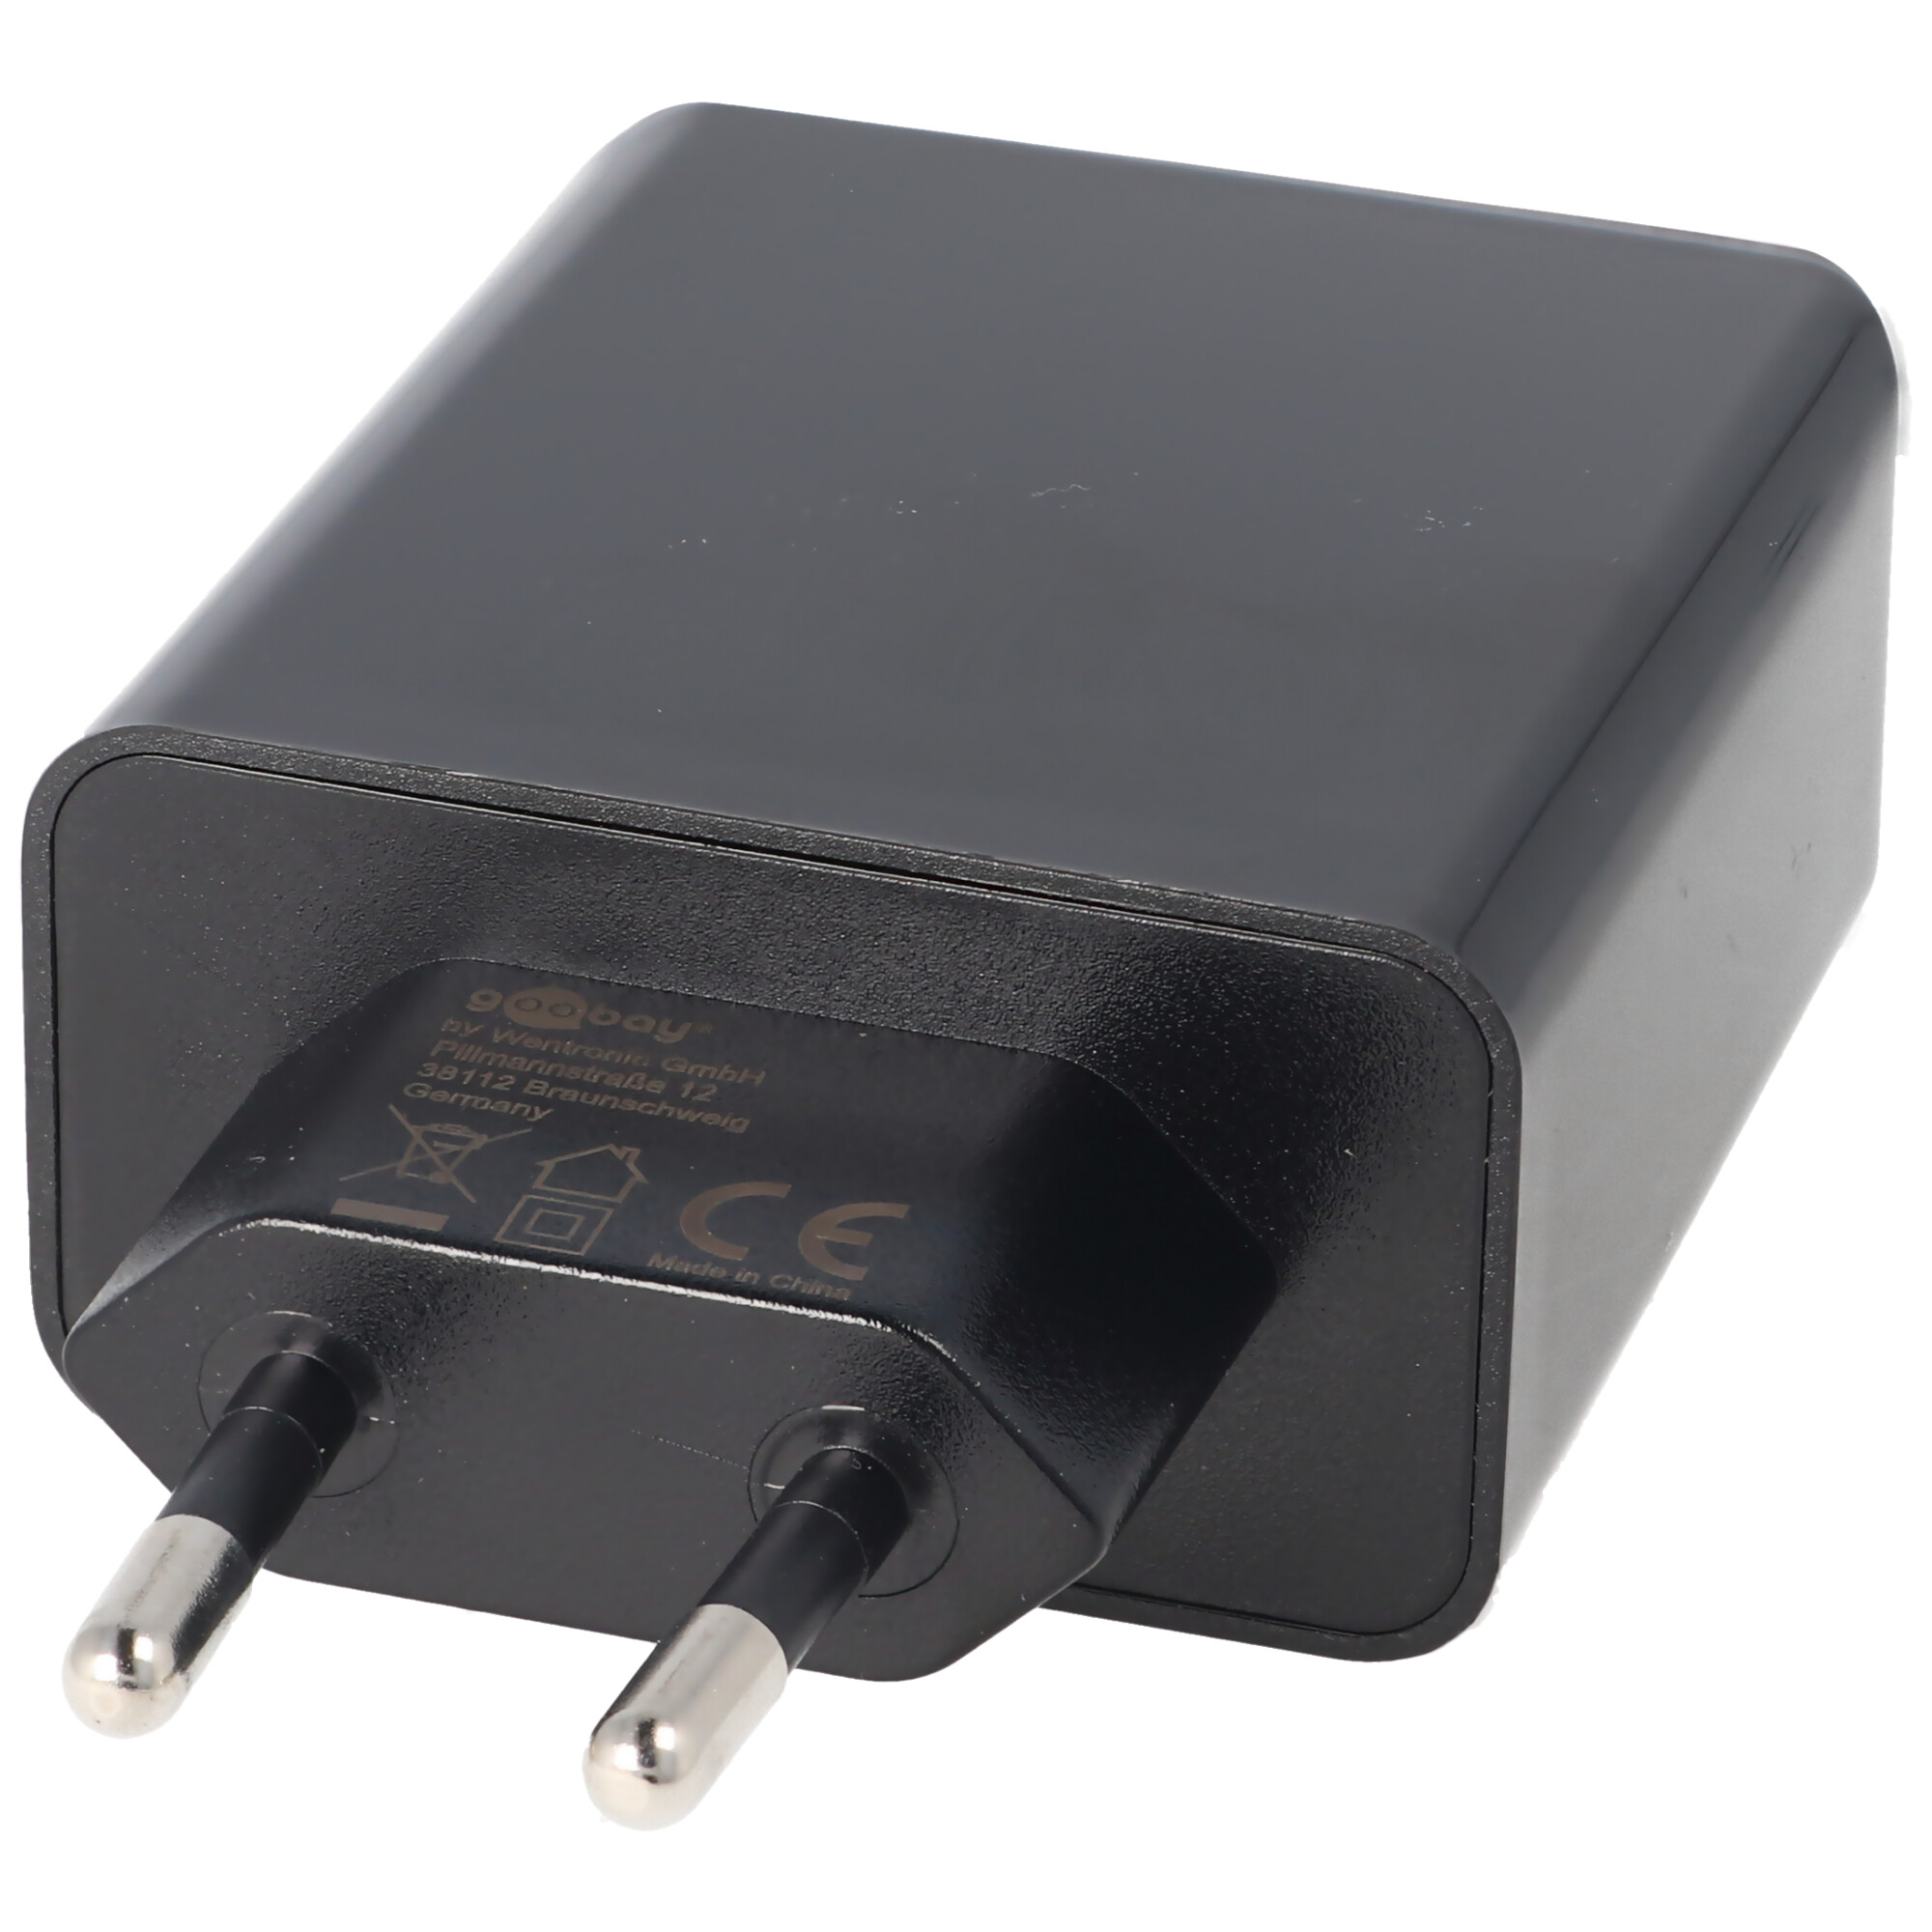 Dual-USB Schnellladegerät USB QC3.0 28W schwarz, lädt bis zu 4x schneller als Standardladegeräte